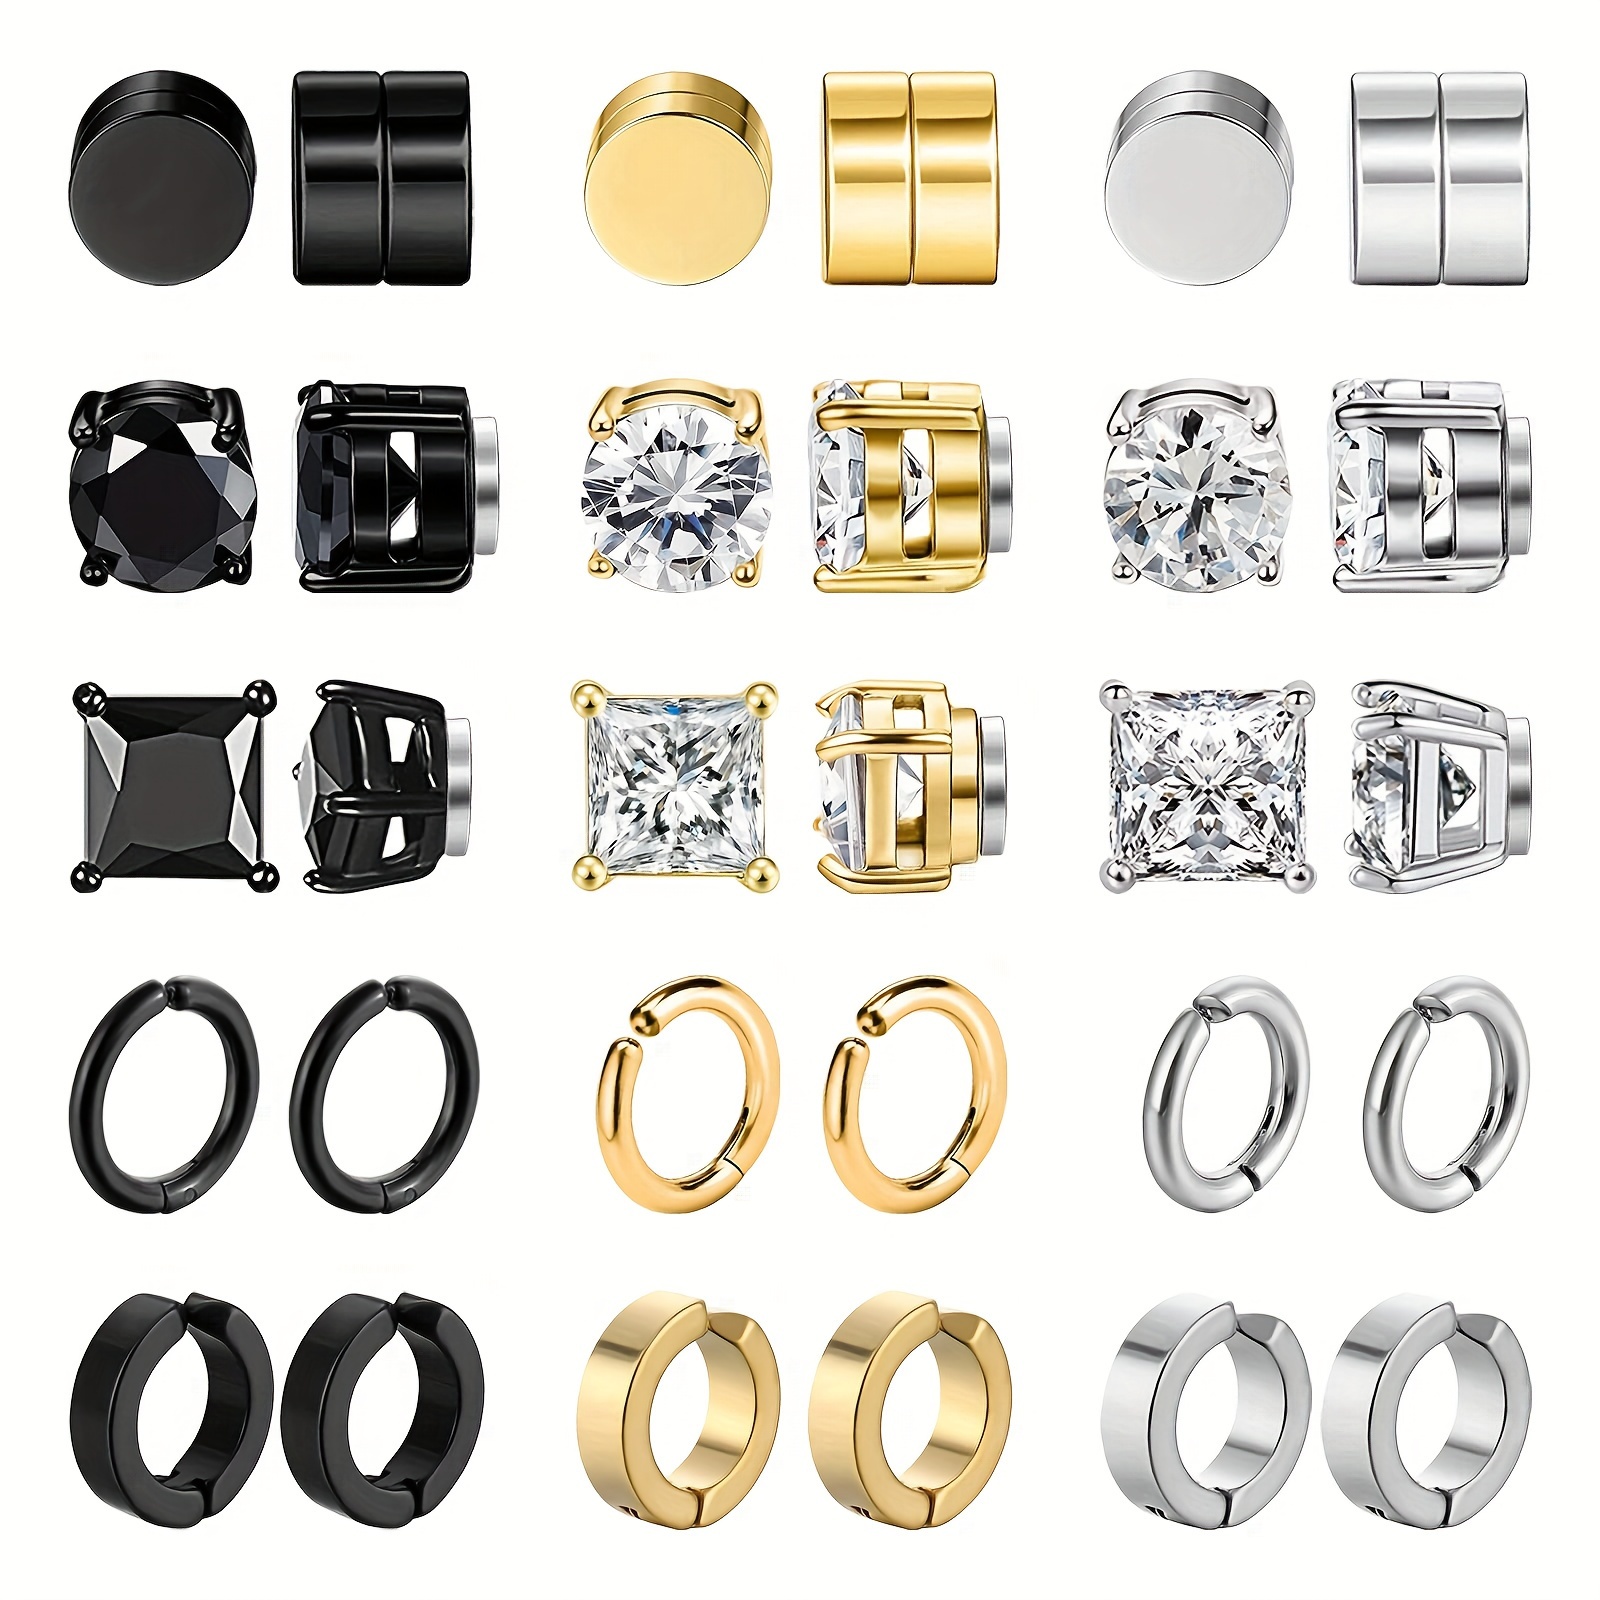 

15pairs Magnetic Stud Earrings For Men, Stainless Steel Magnetic Earrings Men Clip On Earrings, Non Piercing Cross Earrings, Unisex Cz Hoop Dangle Magnetic Earrings